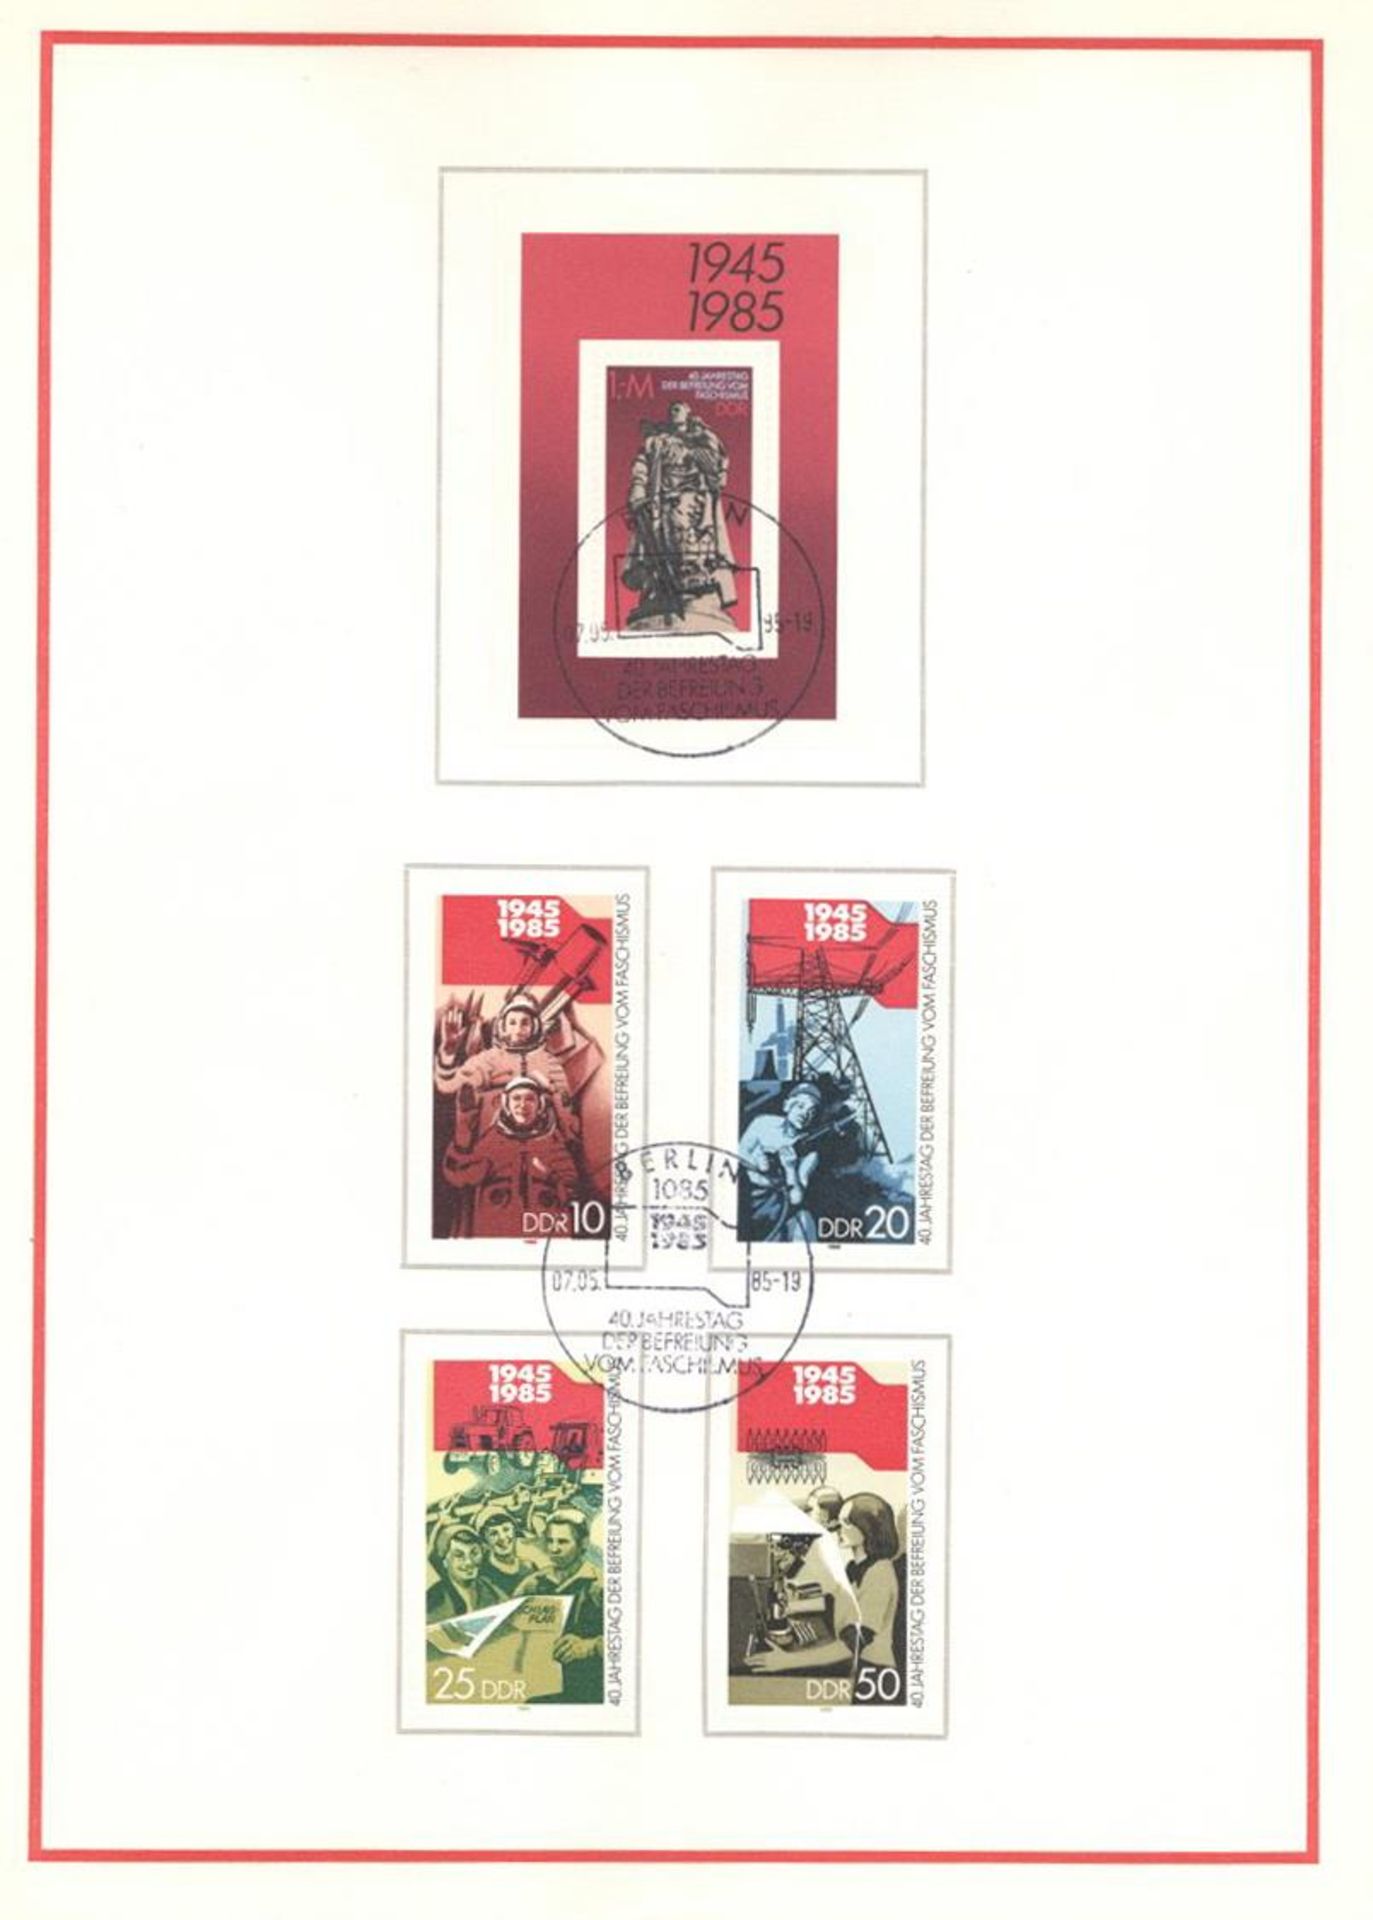 Philatelie 1976 - 1985 6 verschiedene Sonderblätter anläßlich diverser Propagandaausgaben I-IIDieses